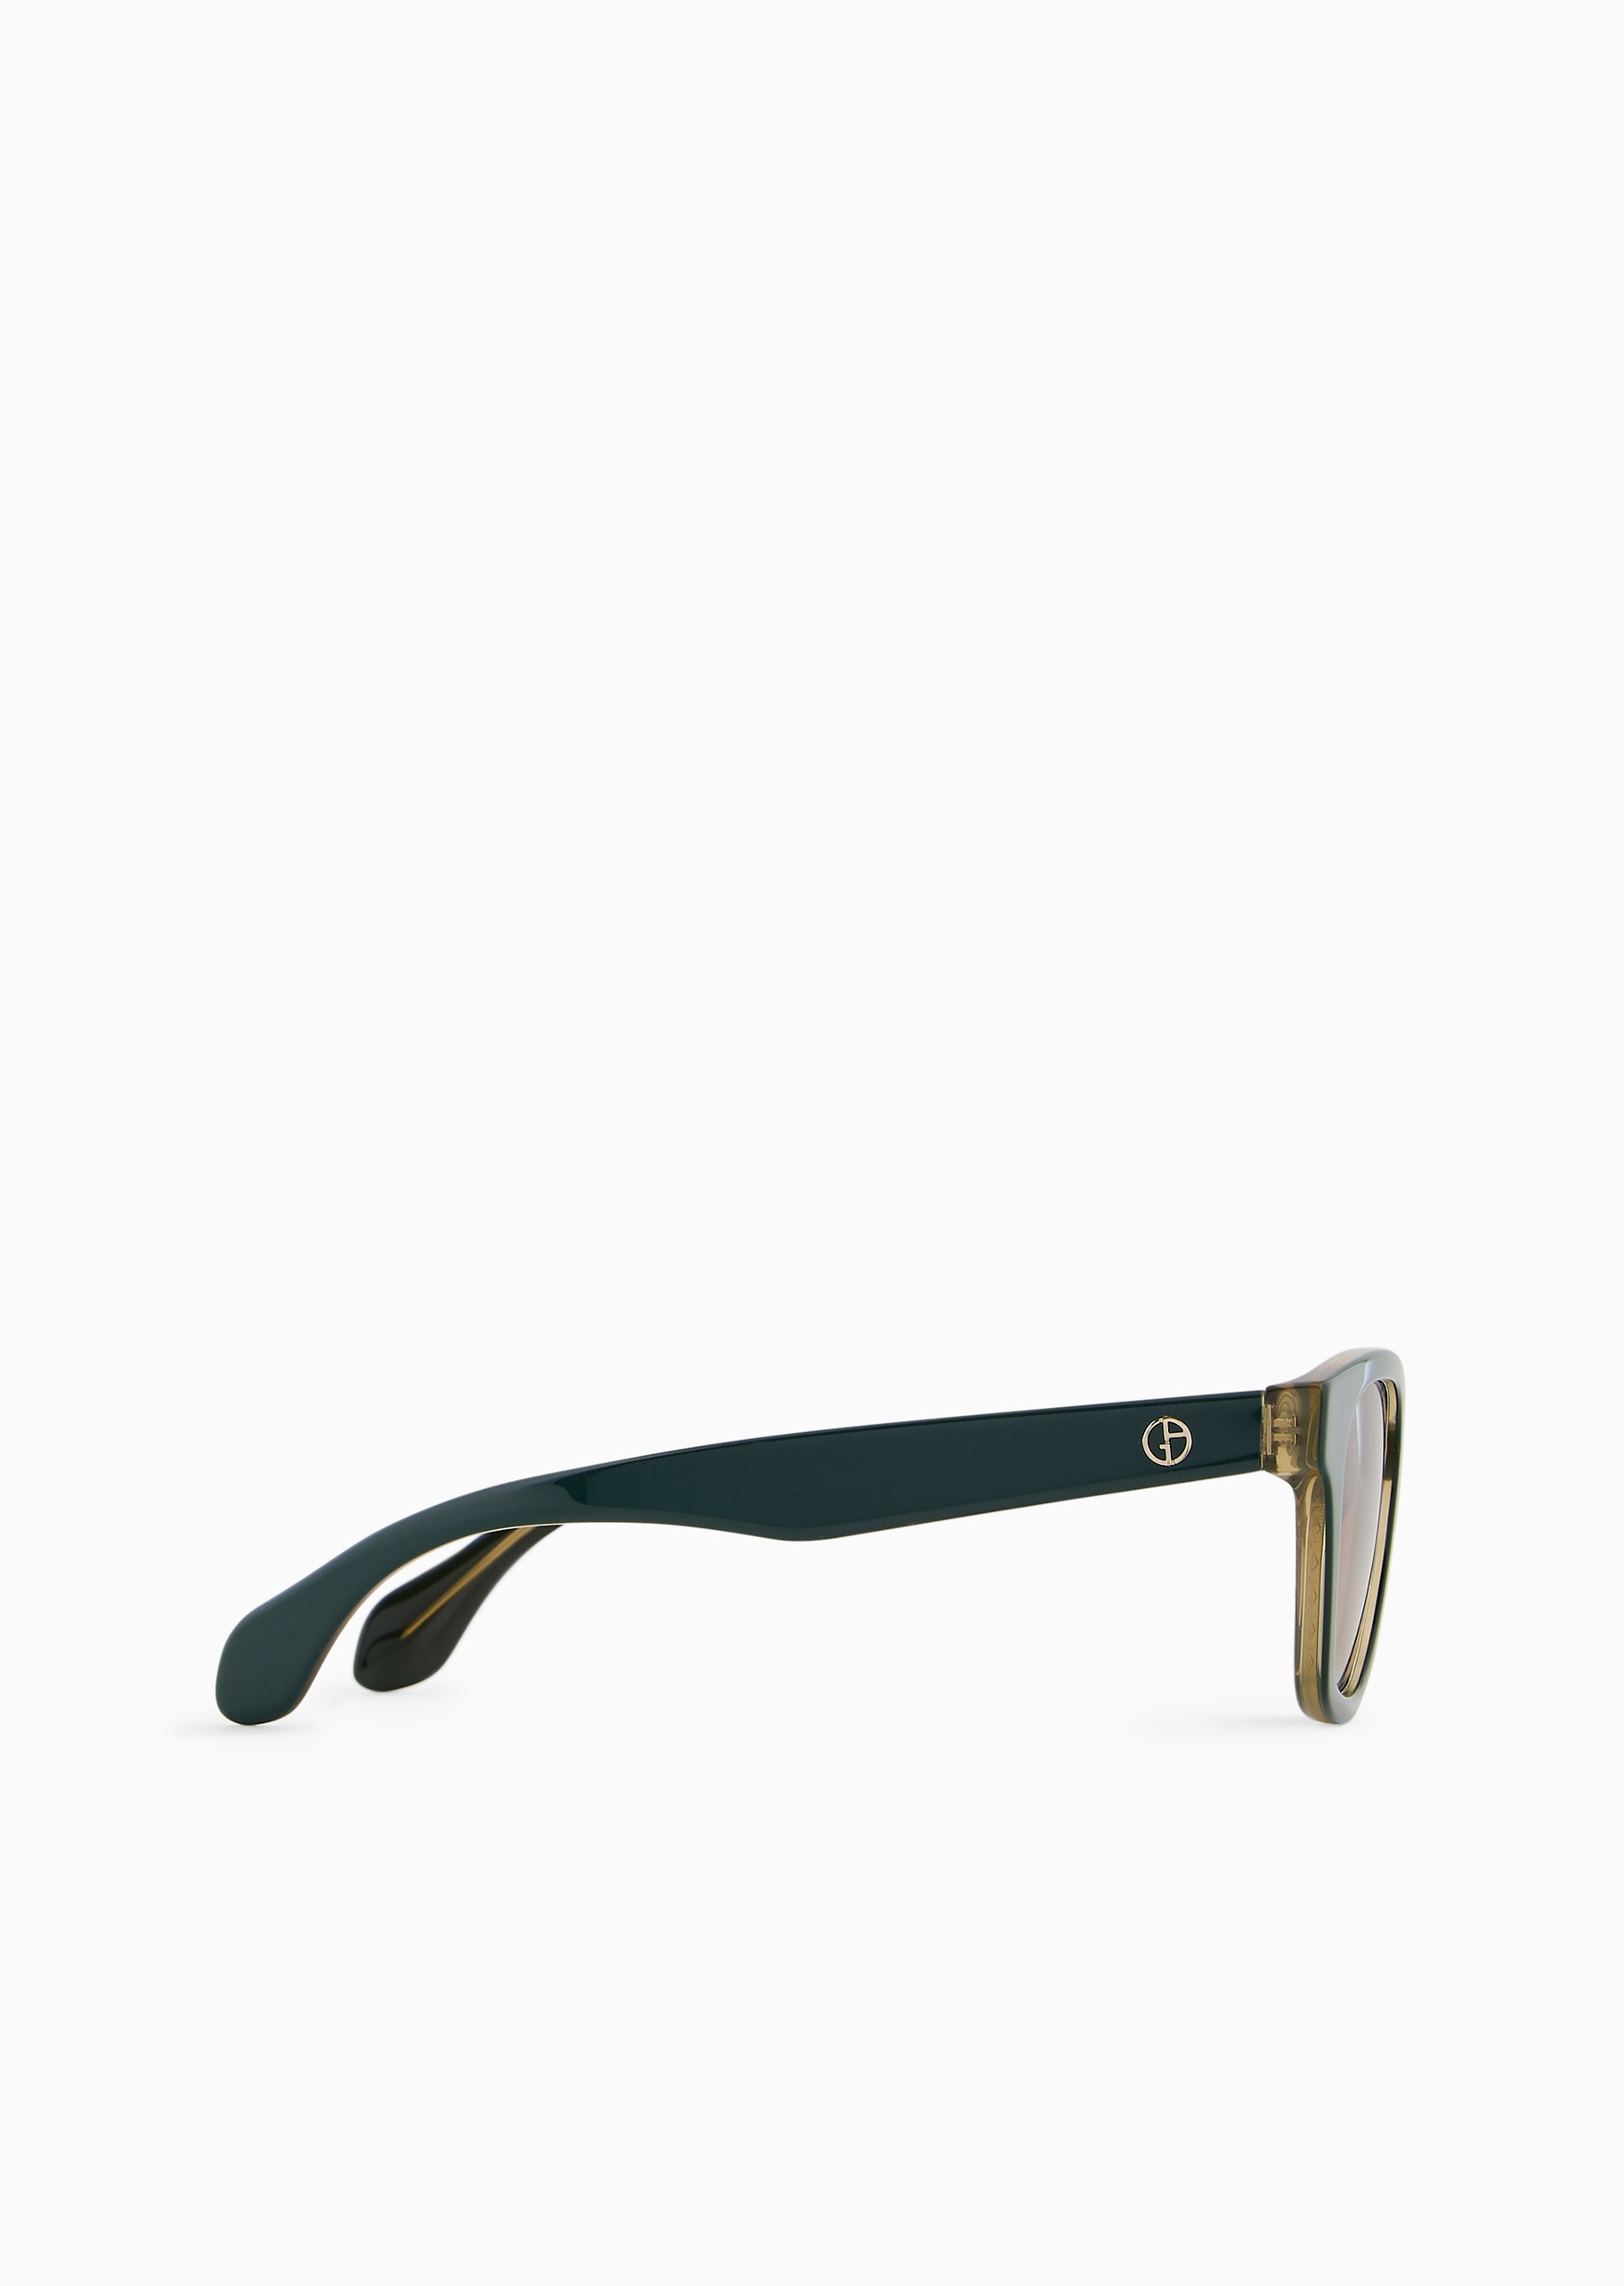 Giorgio Armani 男士圆形粗框遮阳潮流个性太阳眼镜